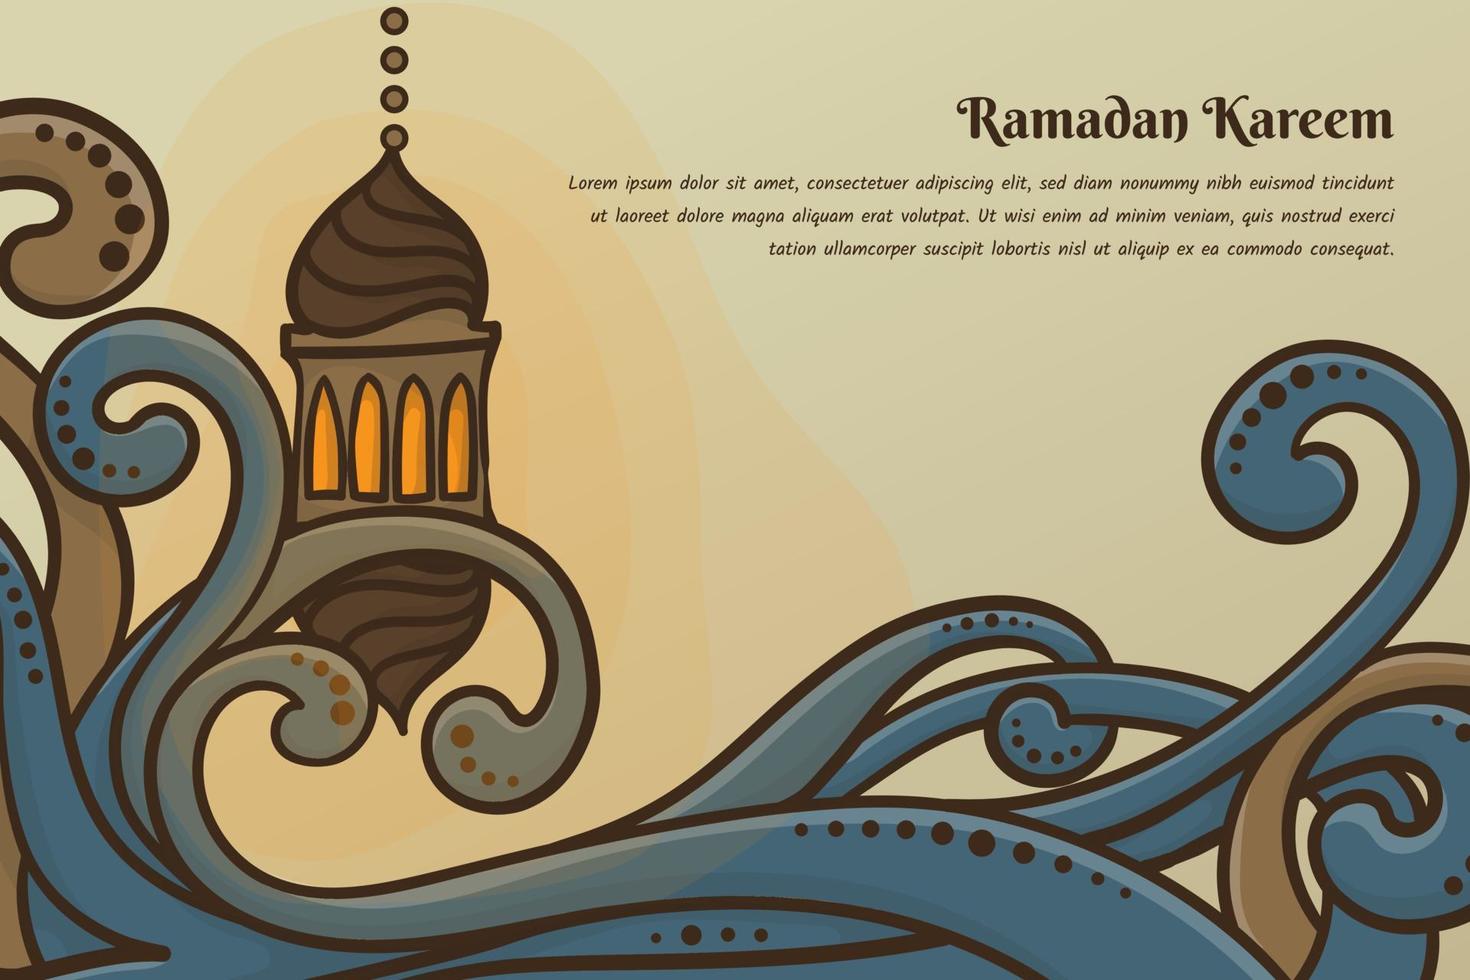 fond floral en dessin animé dessiné à la main avec lanterne pour ramadan kareem ou modèle islamique vecteur